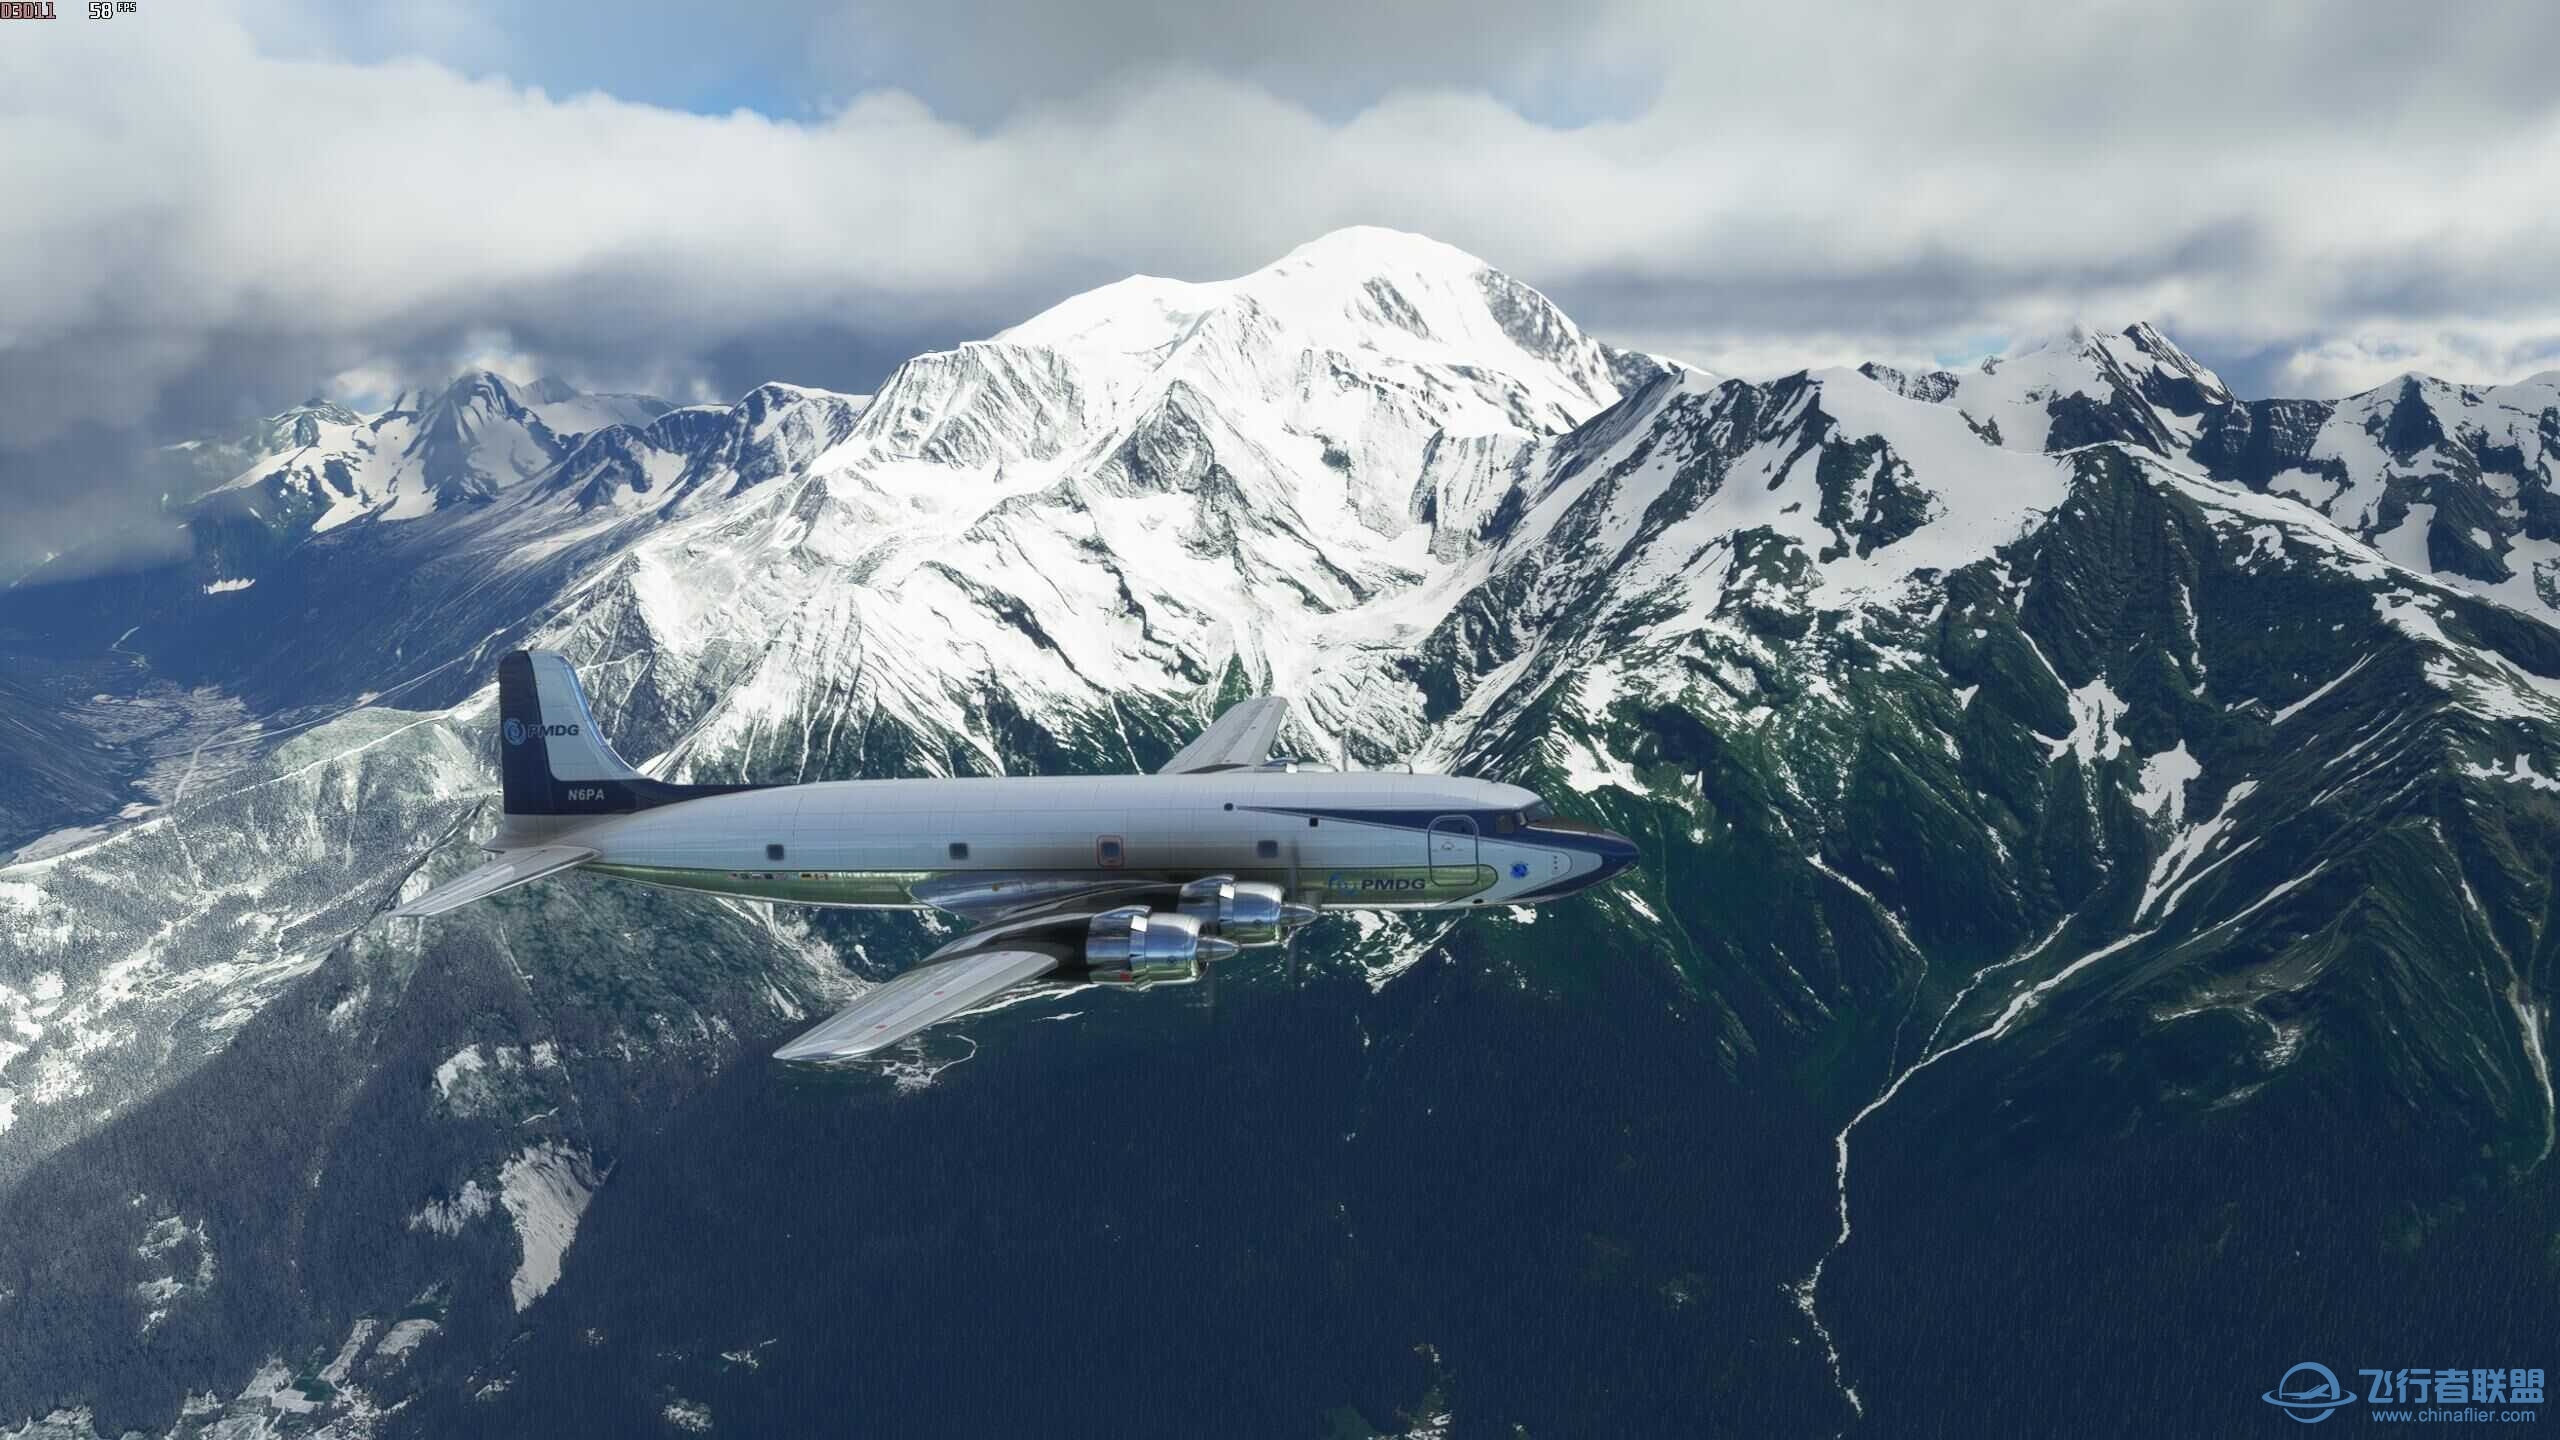 xplane11和微软模拟飞行2020哪个体验感好？-4659 